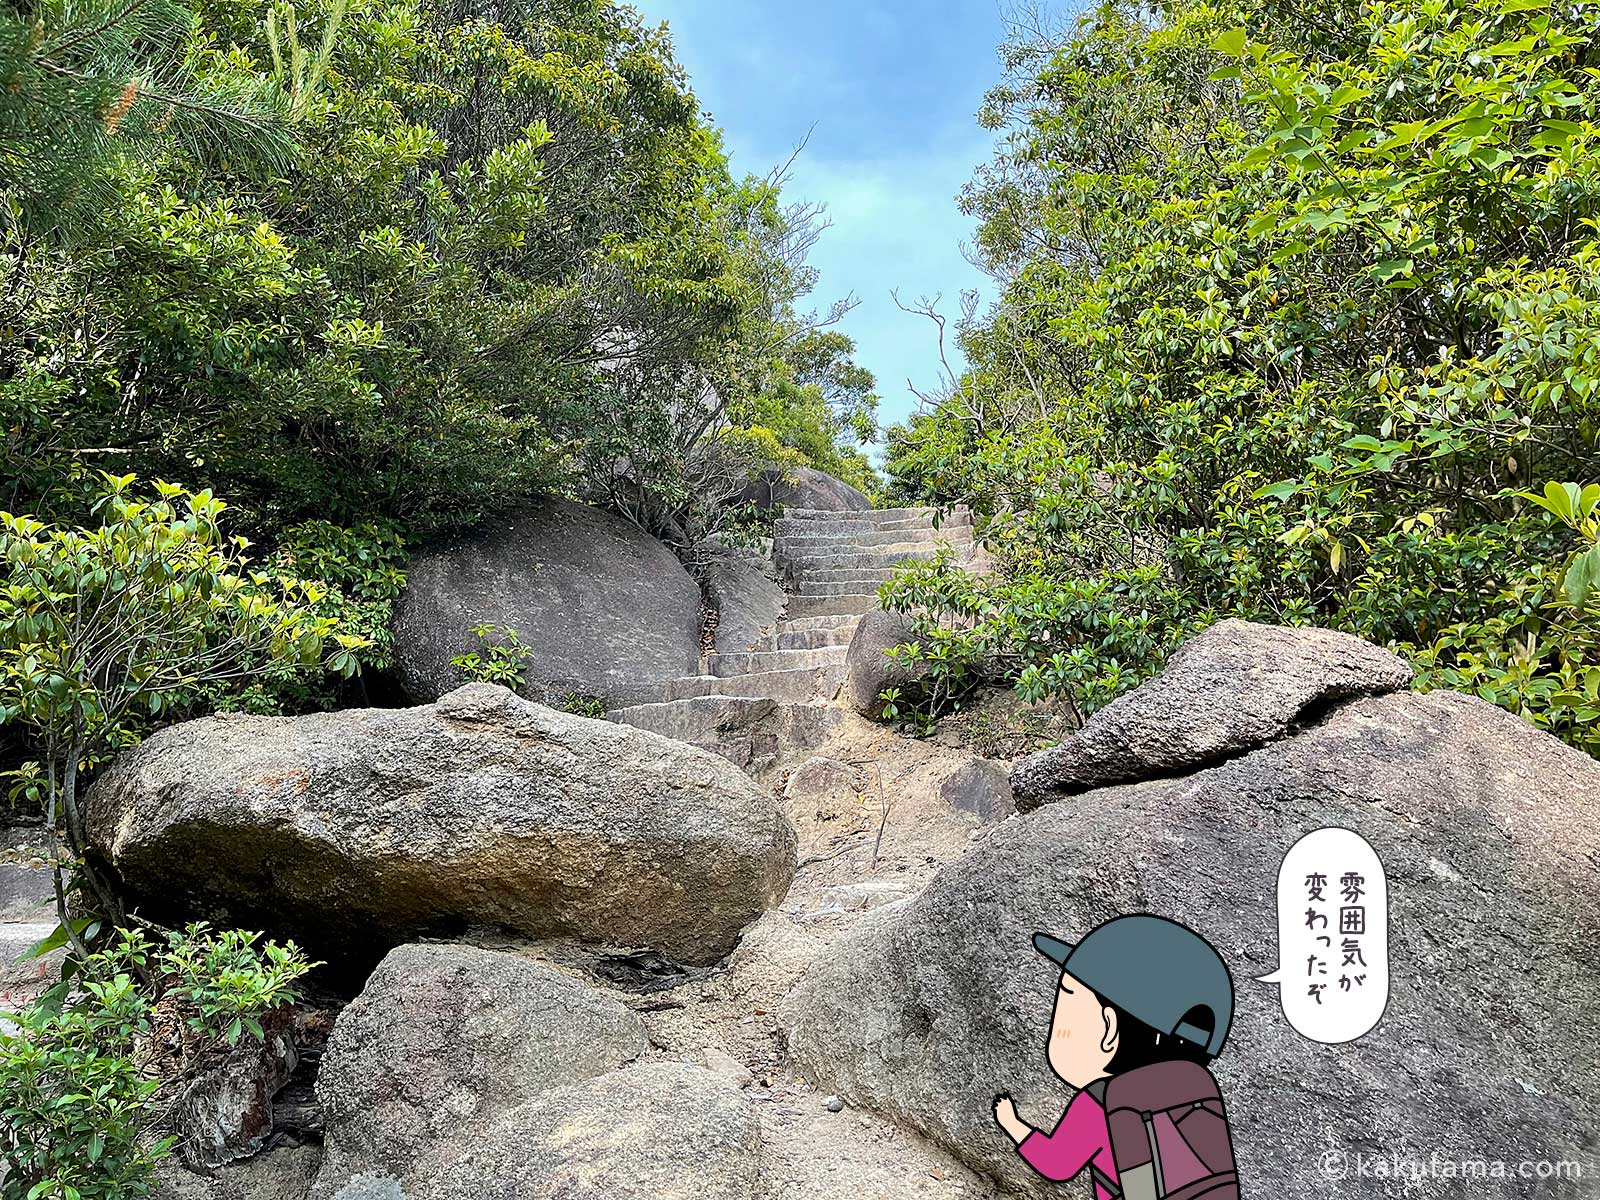 弥山に転がる奇石巨石の写真と登山者のイラスト